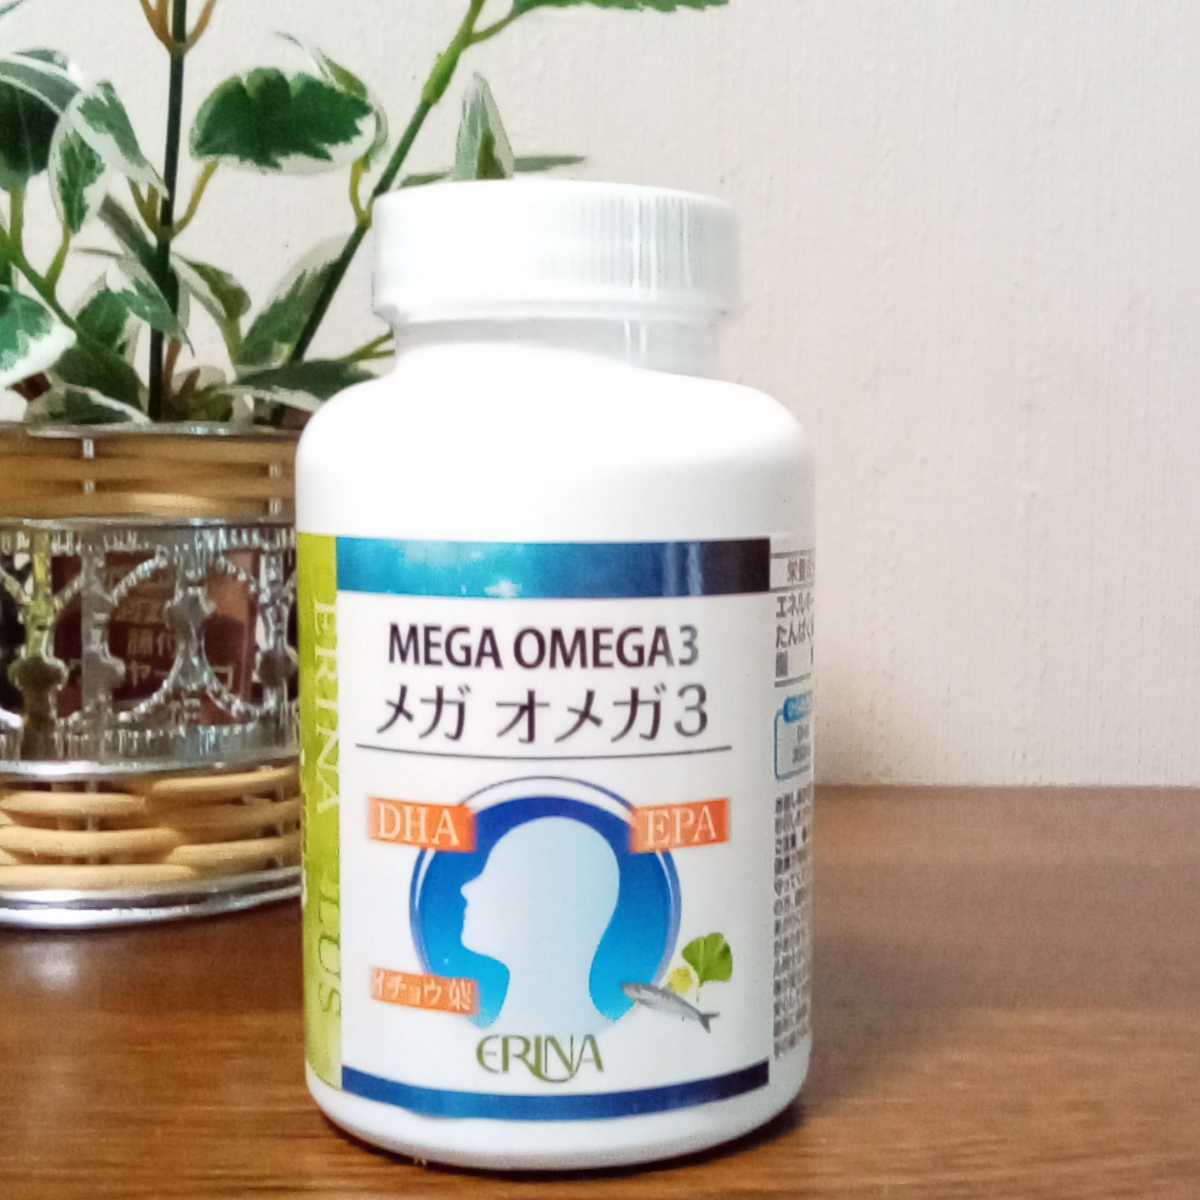  erina mega Omega 3 гинкго лист экстракт 